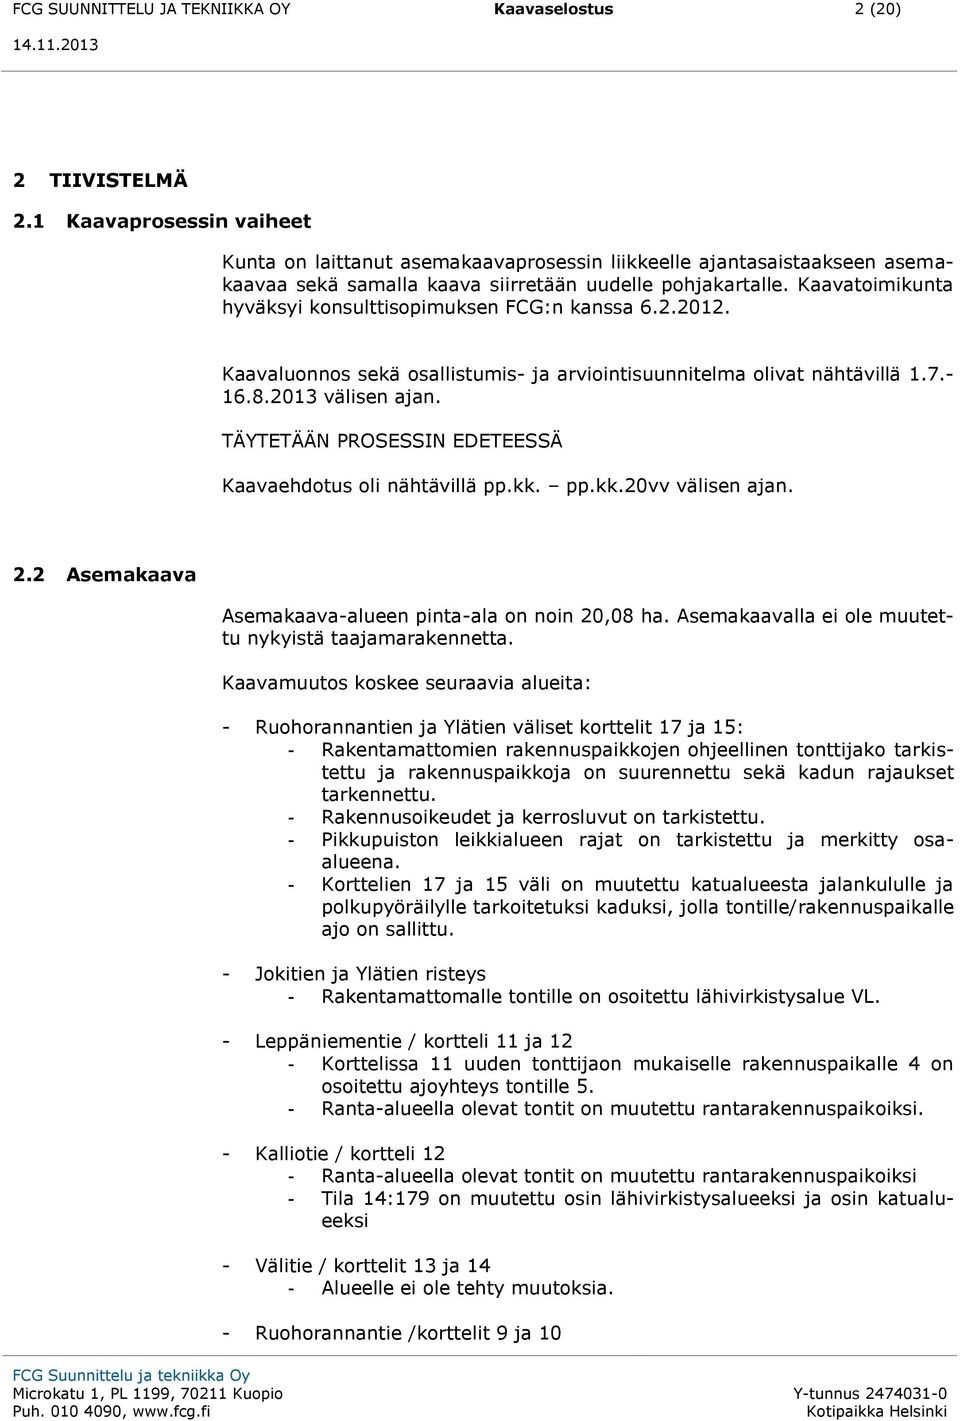 Kaavatoimikunta hyväksyi konsulttisopimuksen FCG:n kanssa 6.2.2012. Kaavaluonnos sekä osallistumis- ja arviointisuunnitelma olivat nähtävillä 1.7.- 16.8.2013 välisen ajan.